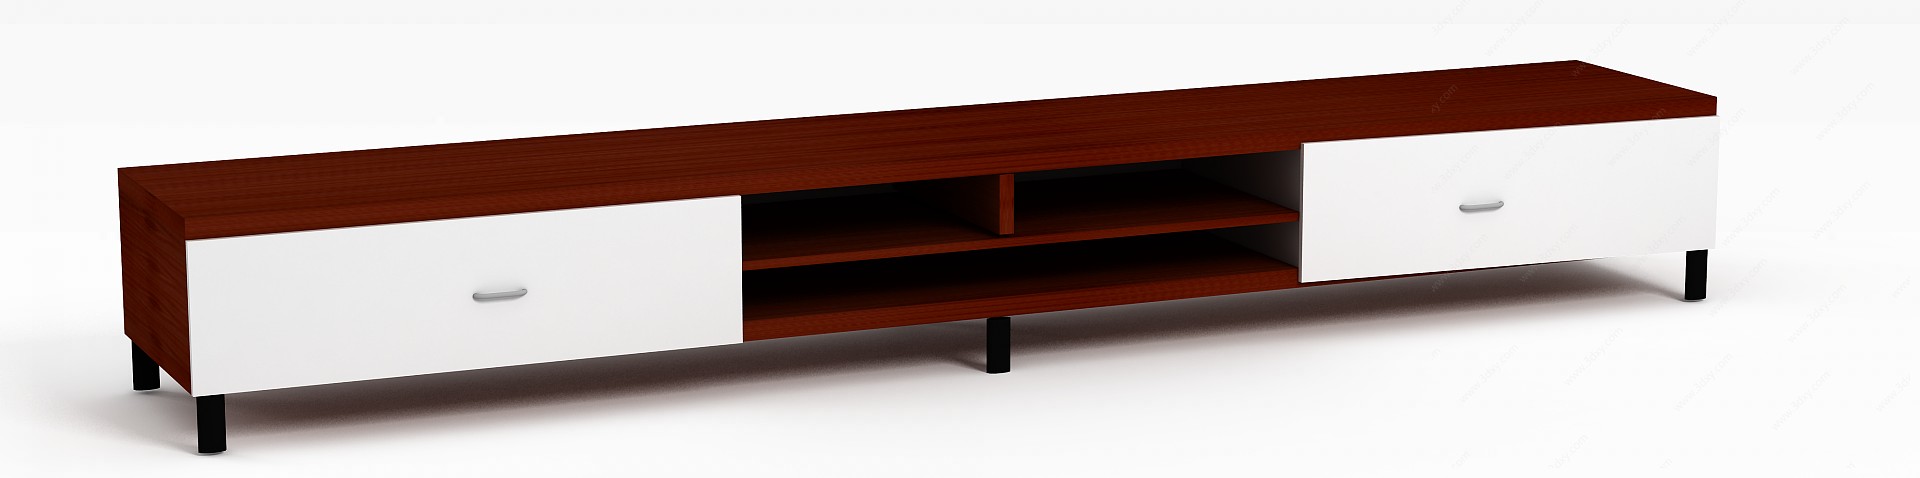 现代简约木艺电视柜3D模型